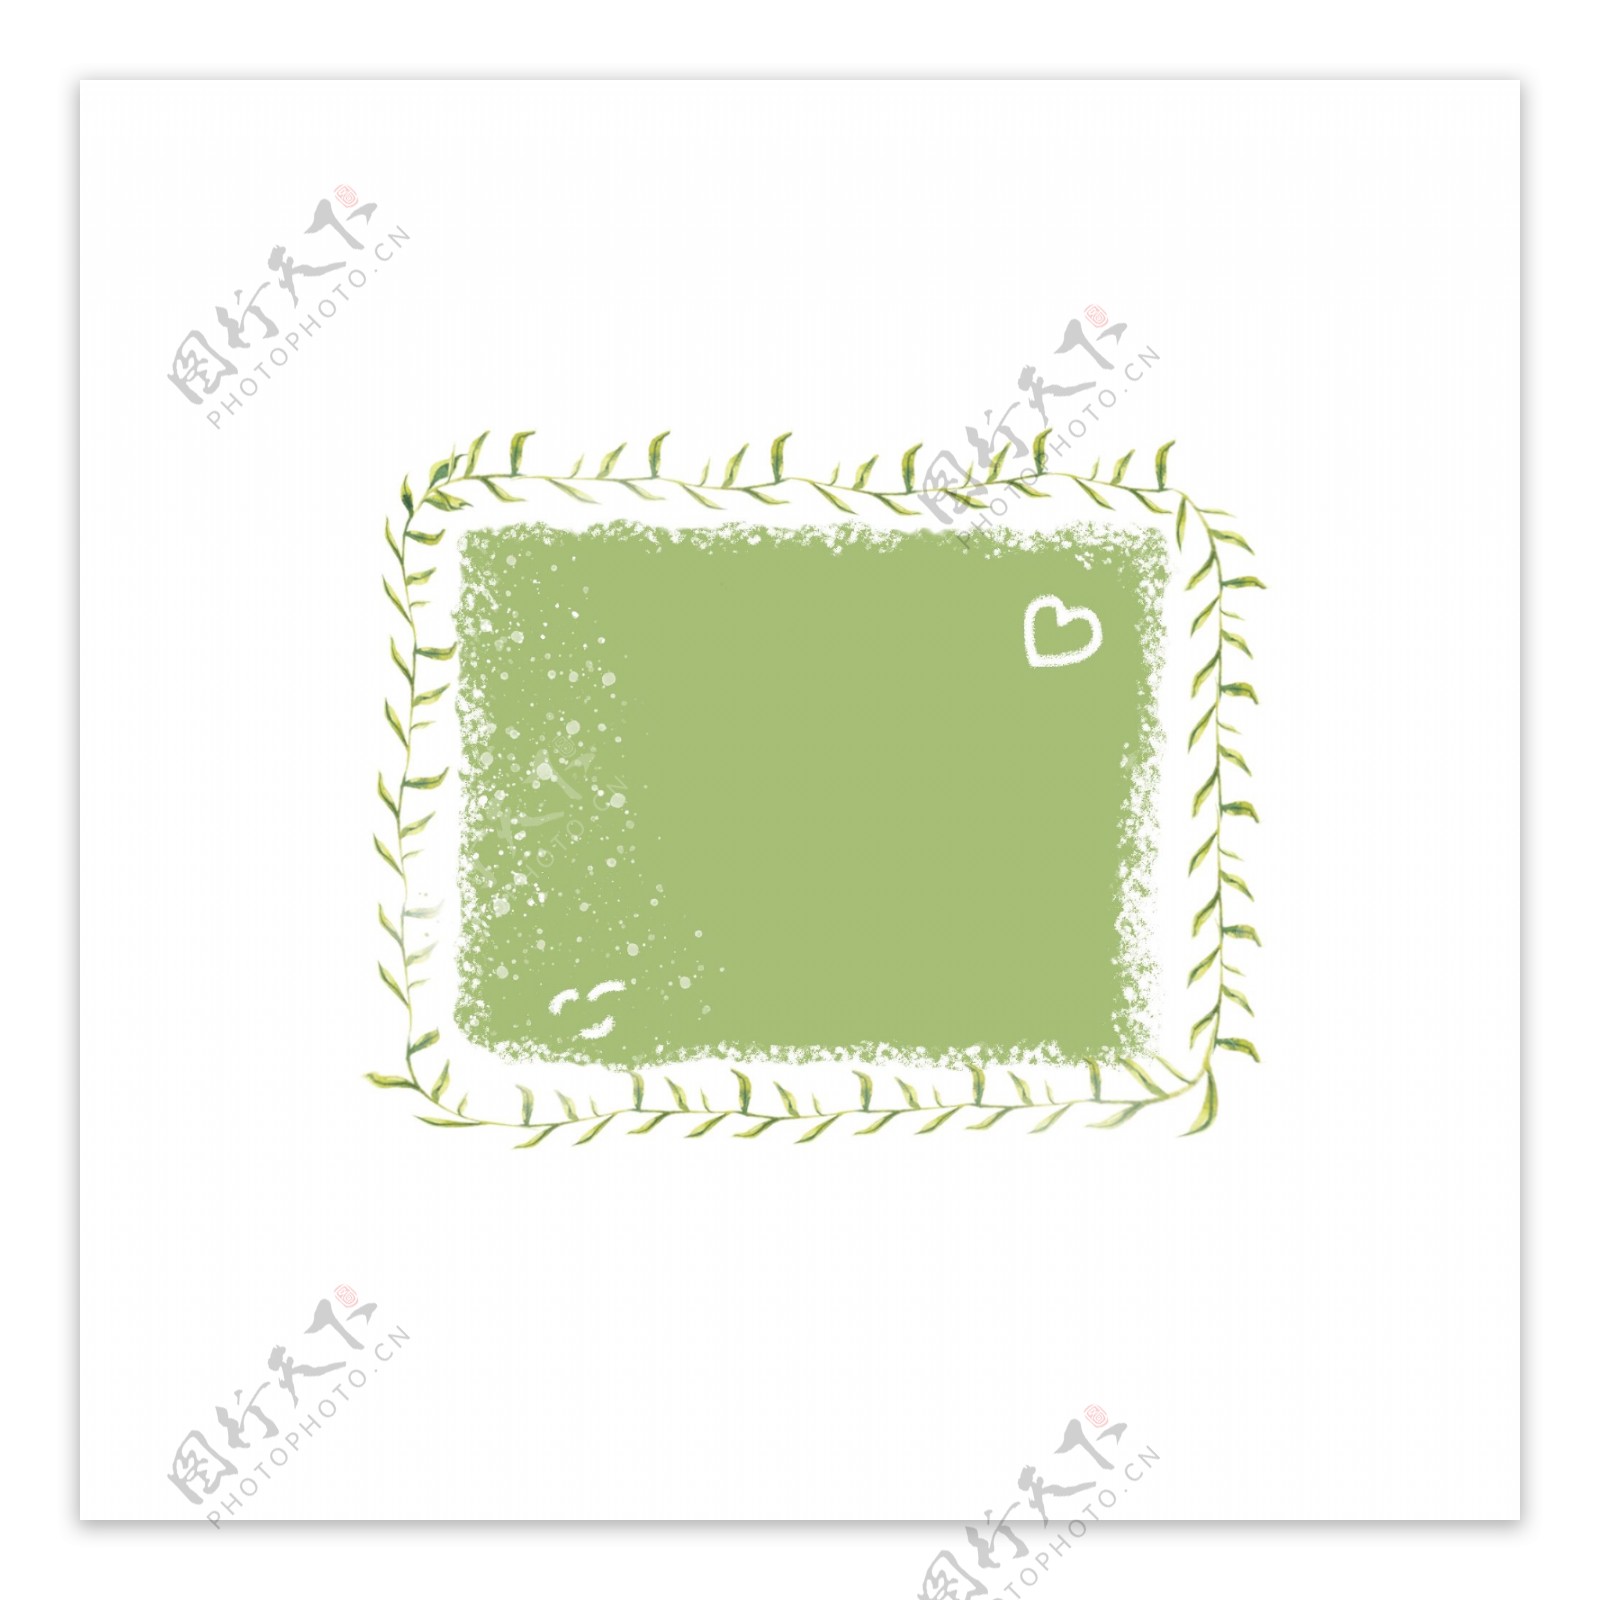 手绘绿色植物叶子卡通可爱边框可商用元素